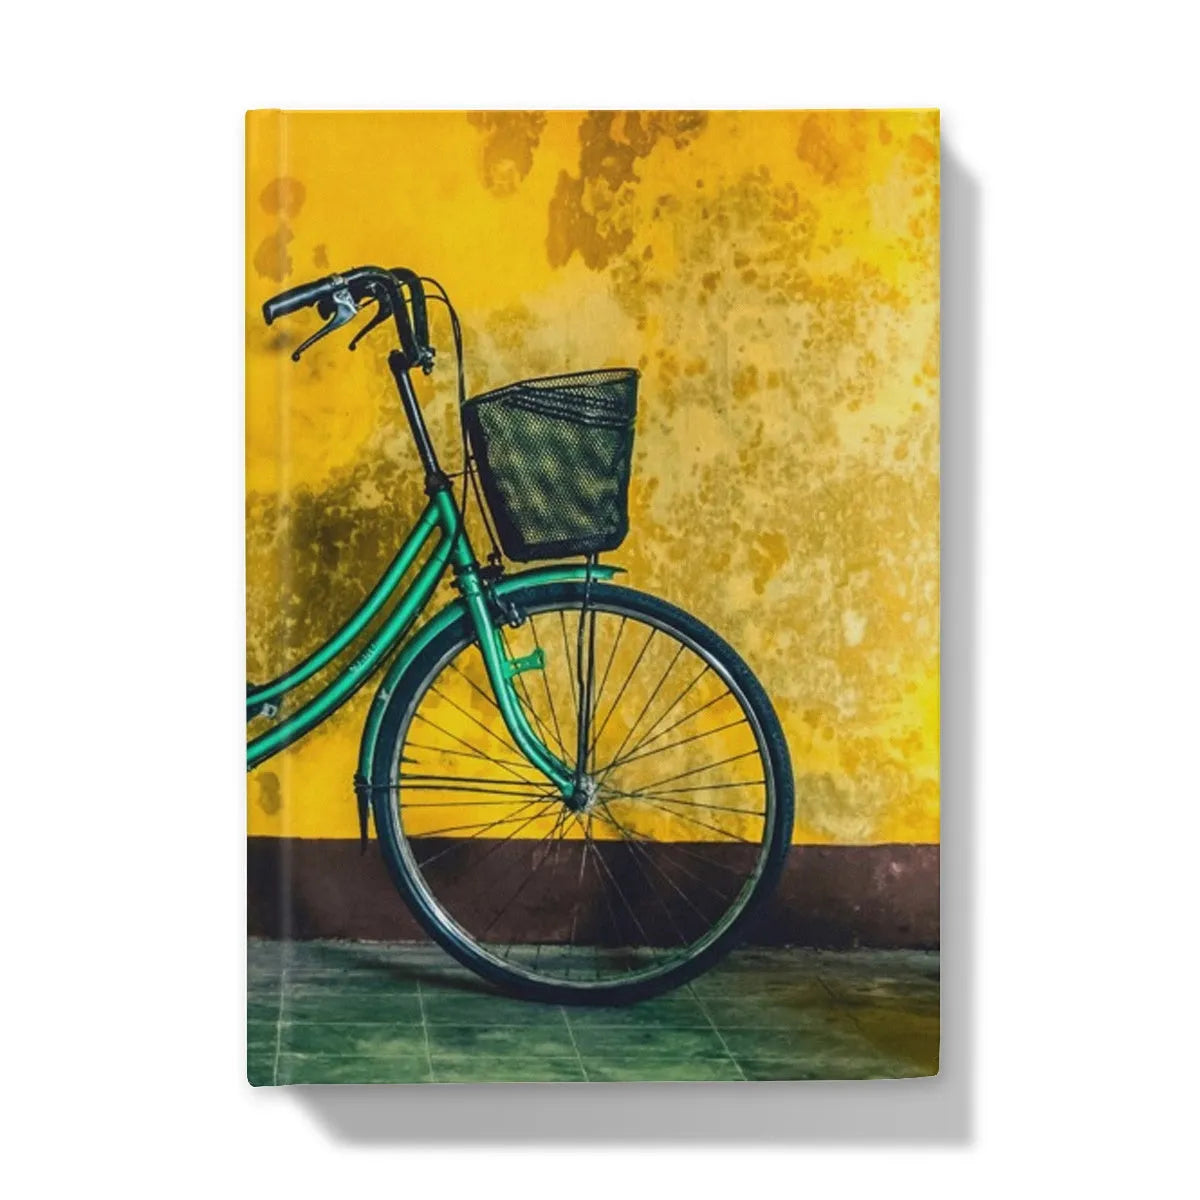 Lemon Lime Hardback Journal - 5’x7’ / Lined - Notebooks & Notepads - Aesthetic Art